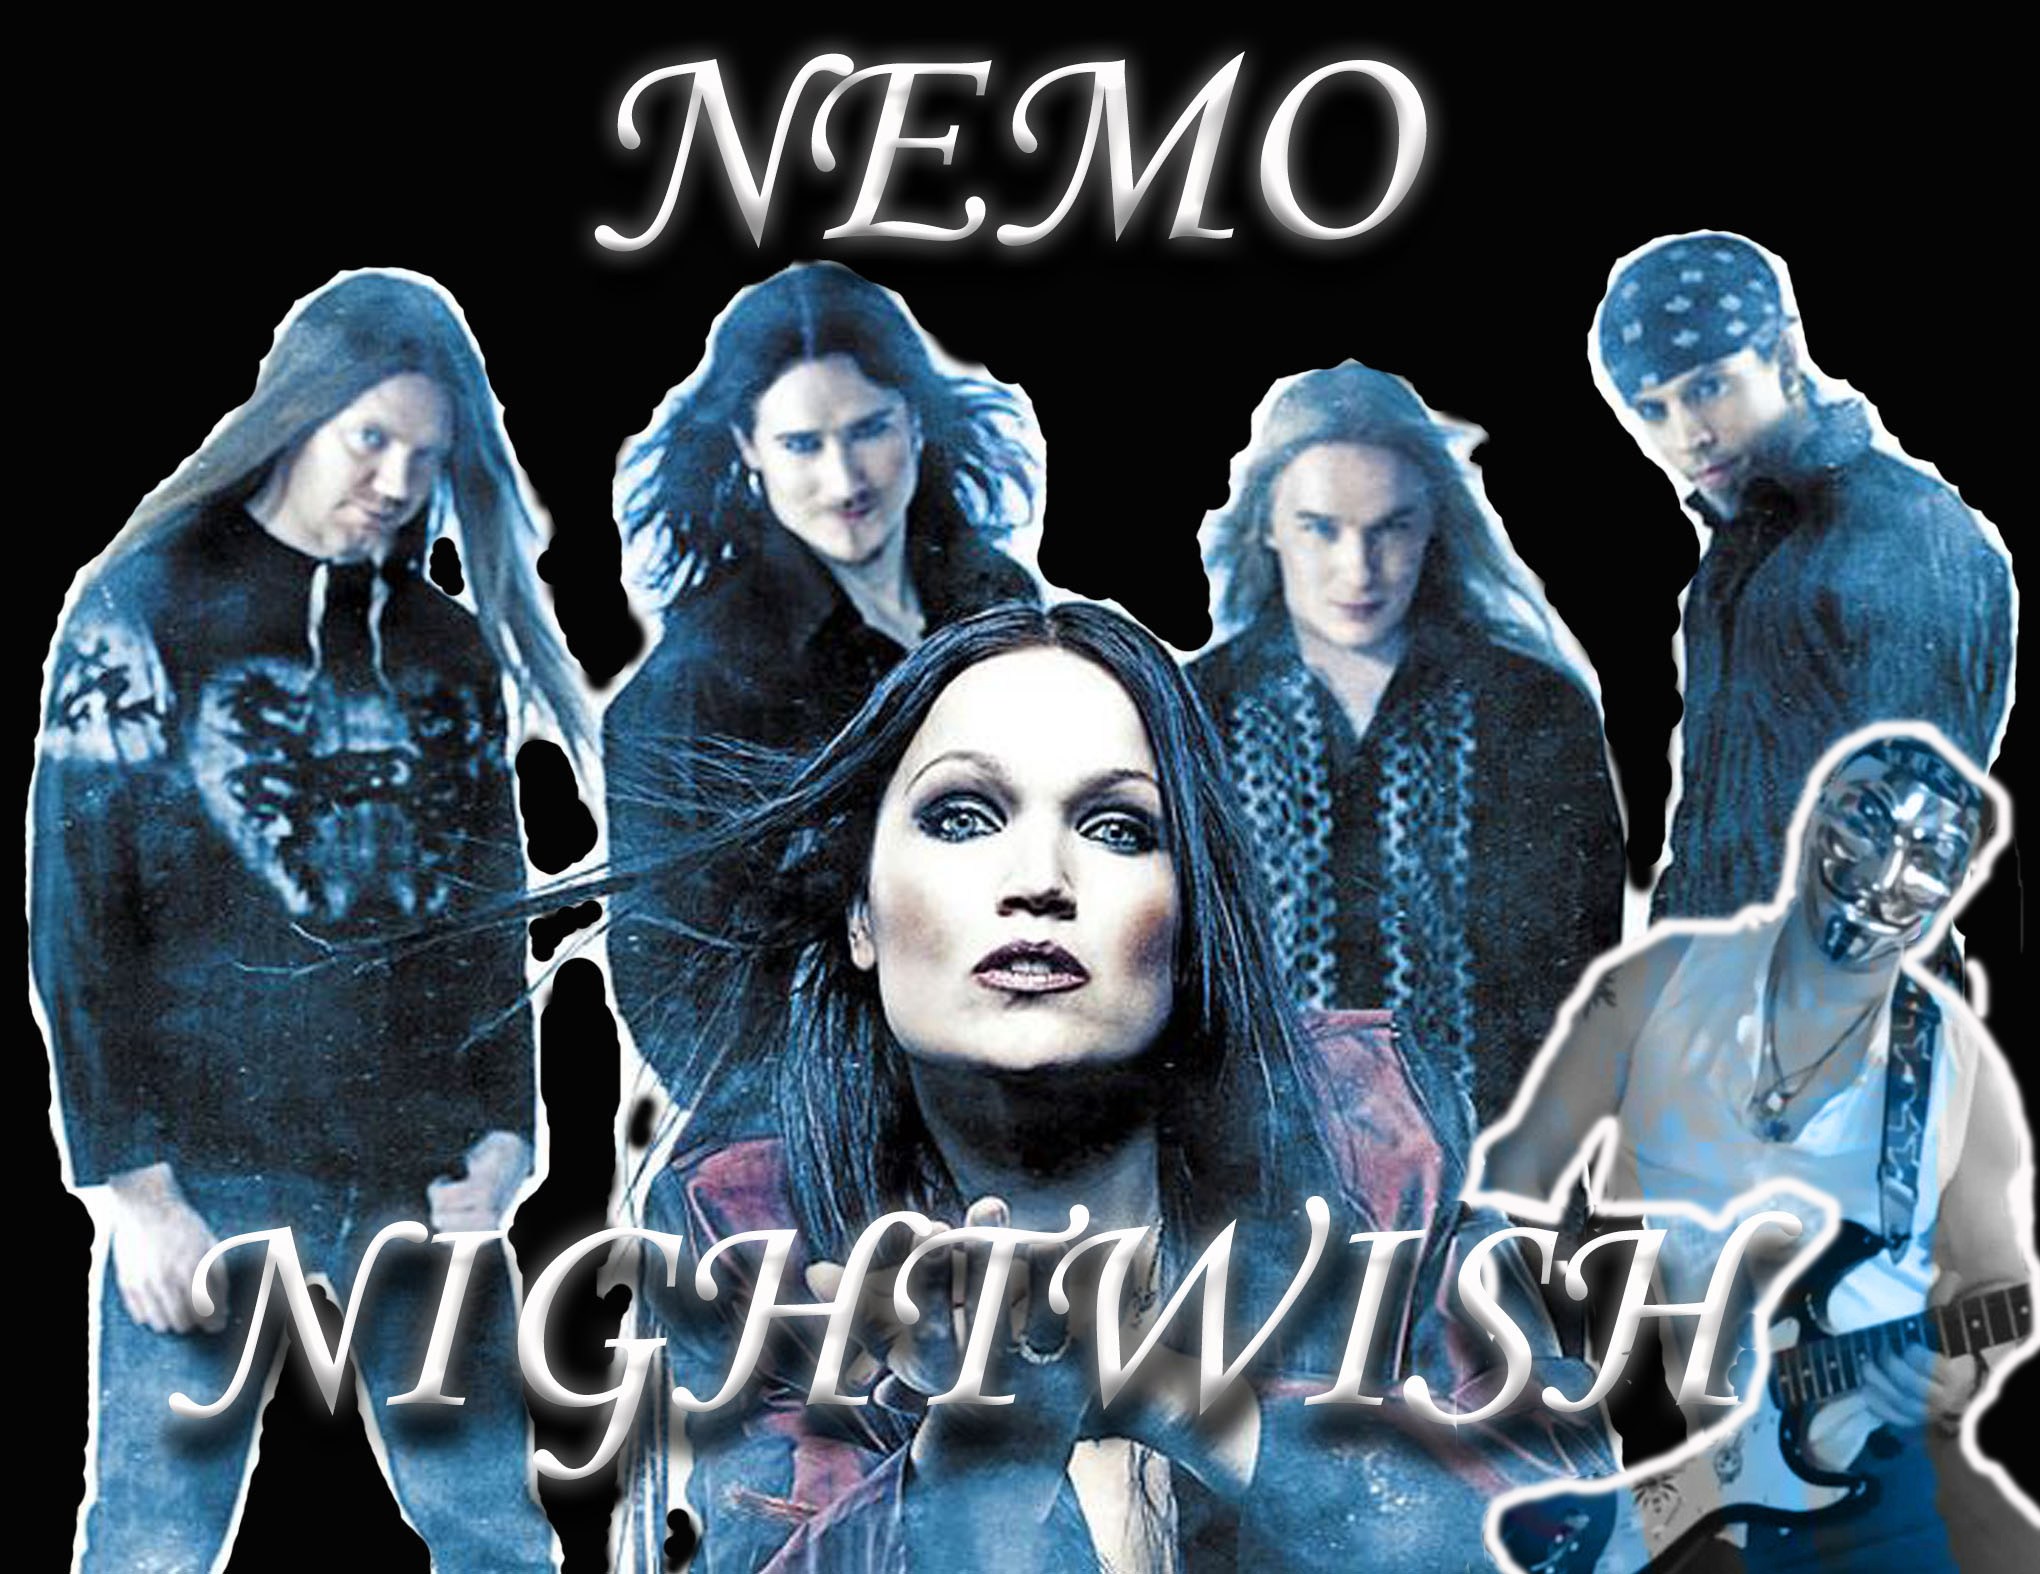 NIGHTWISH - Nemo ( guitar solo cover)